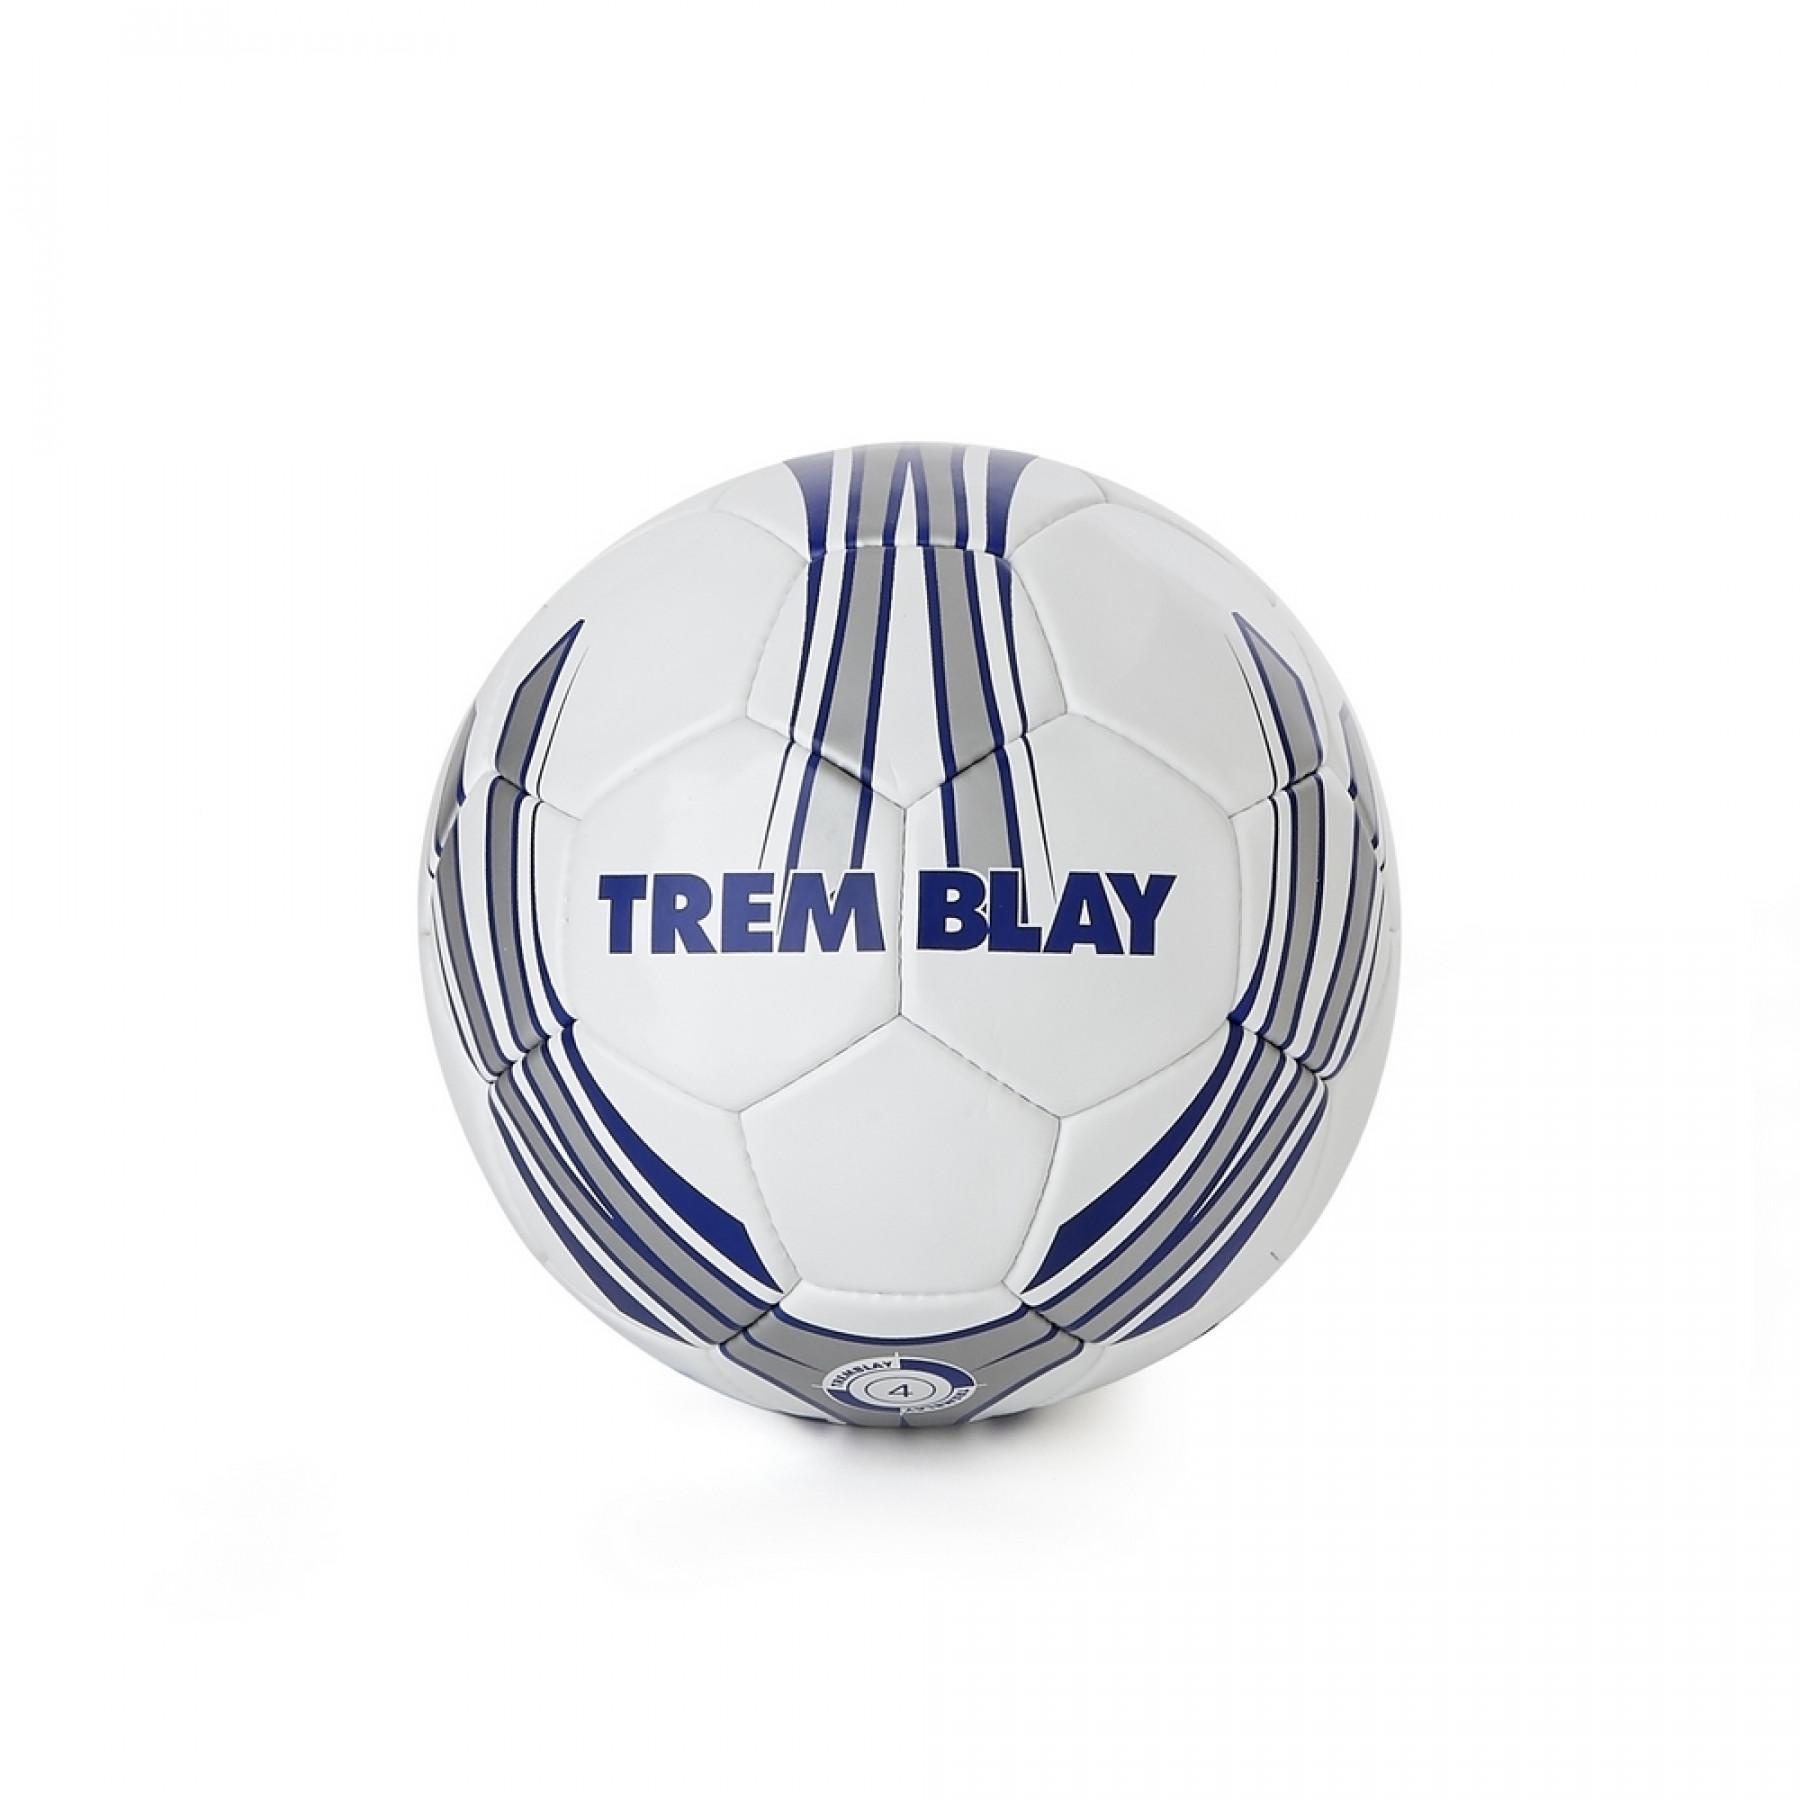 Tremblay trianing football